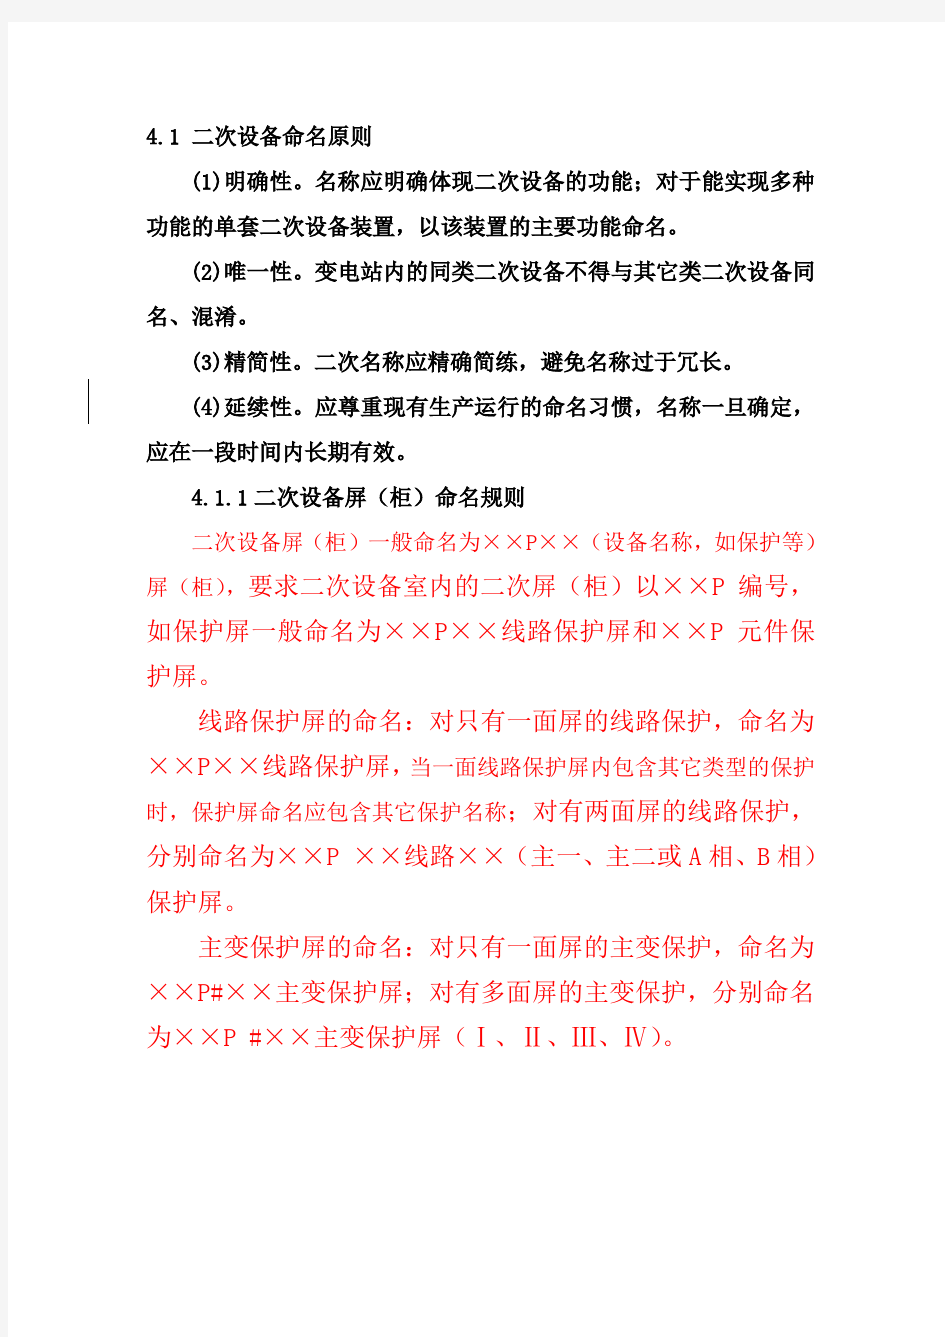 广东电网变电站二次设备命名及标识规范(0080430)